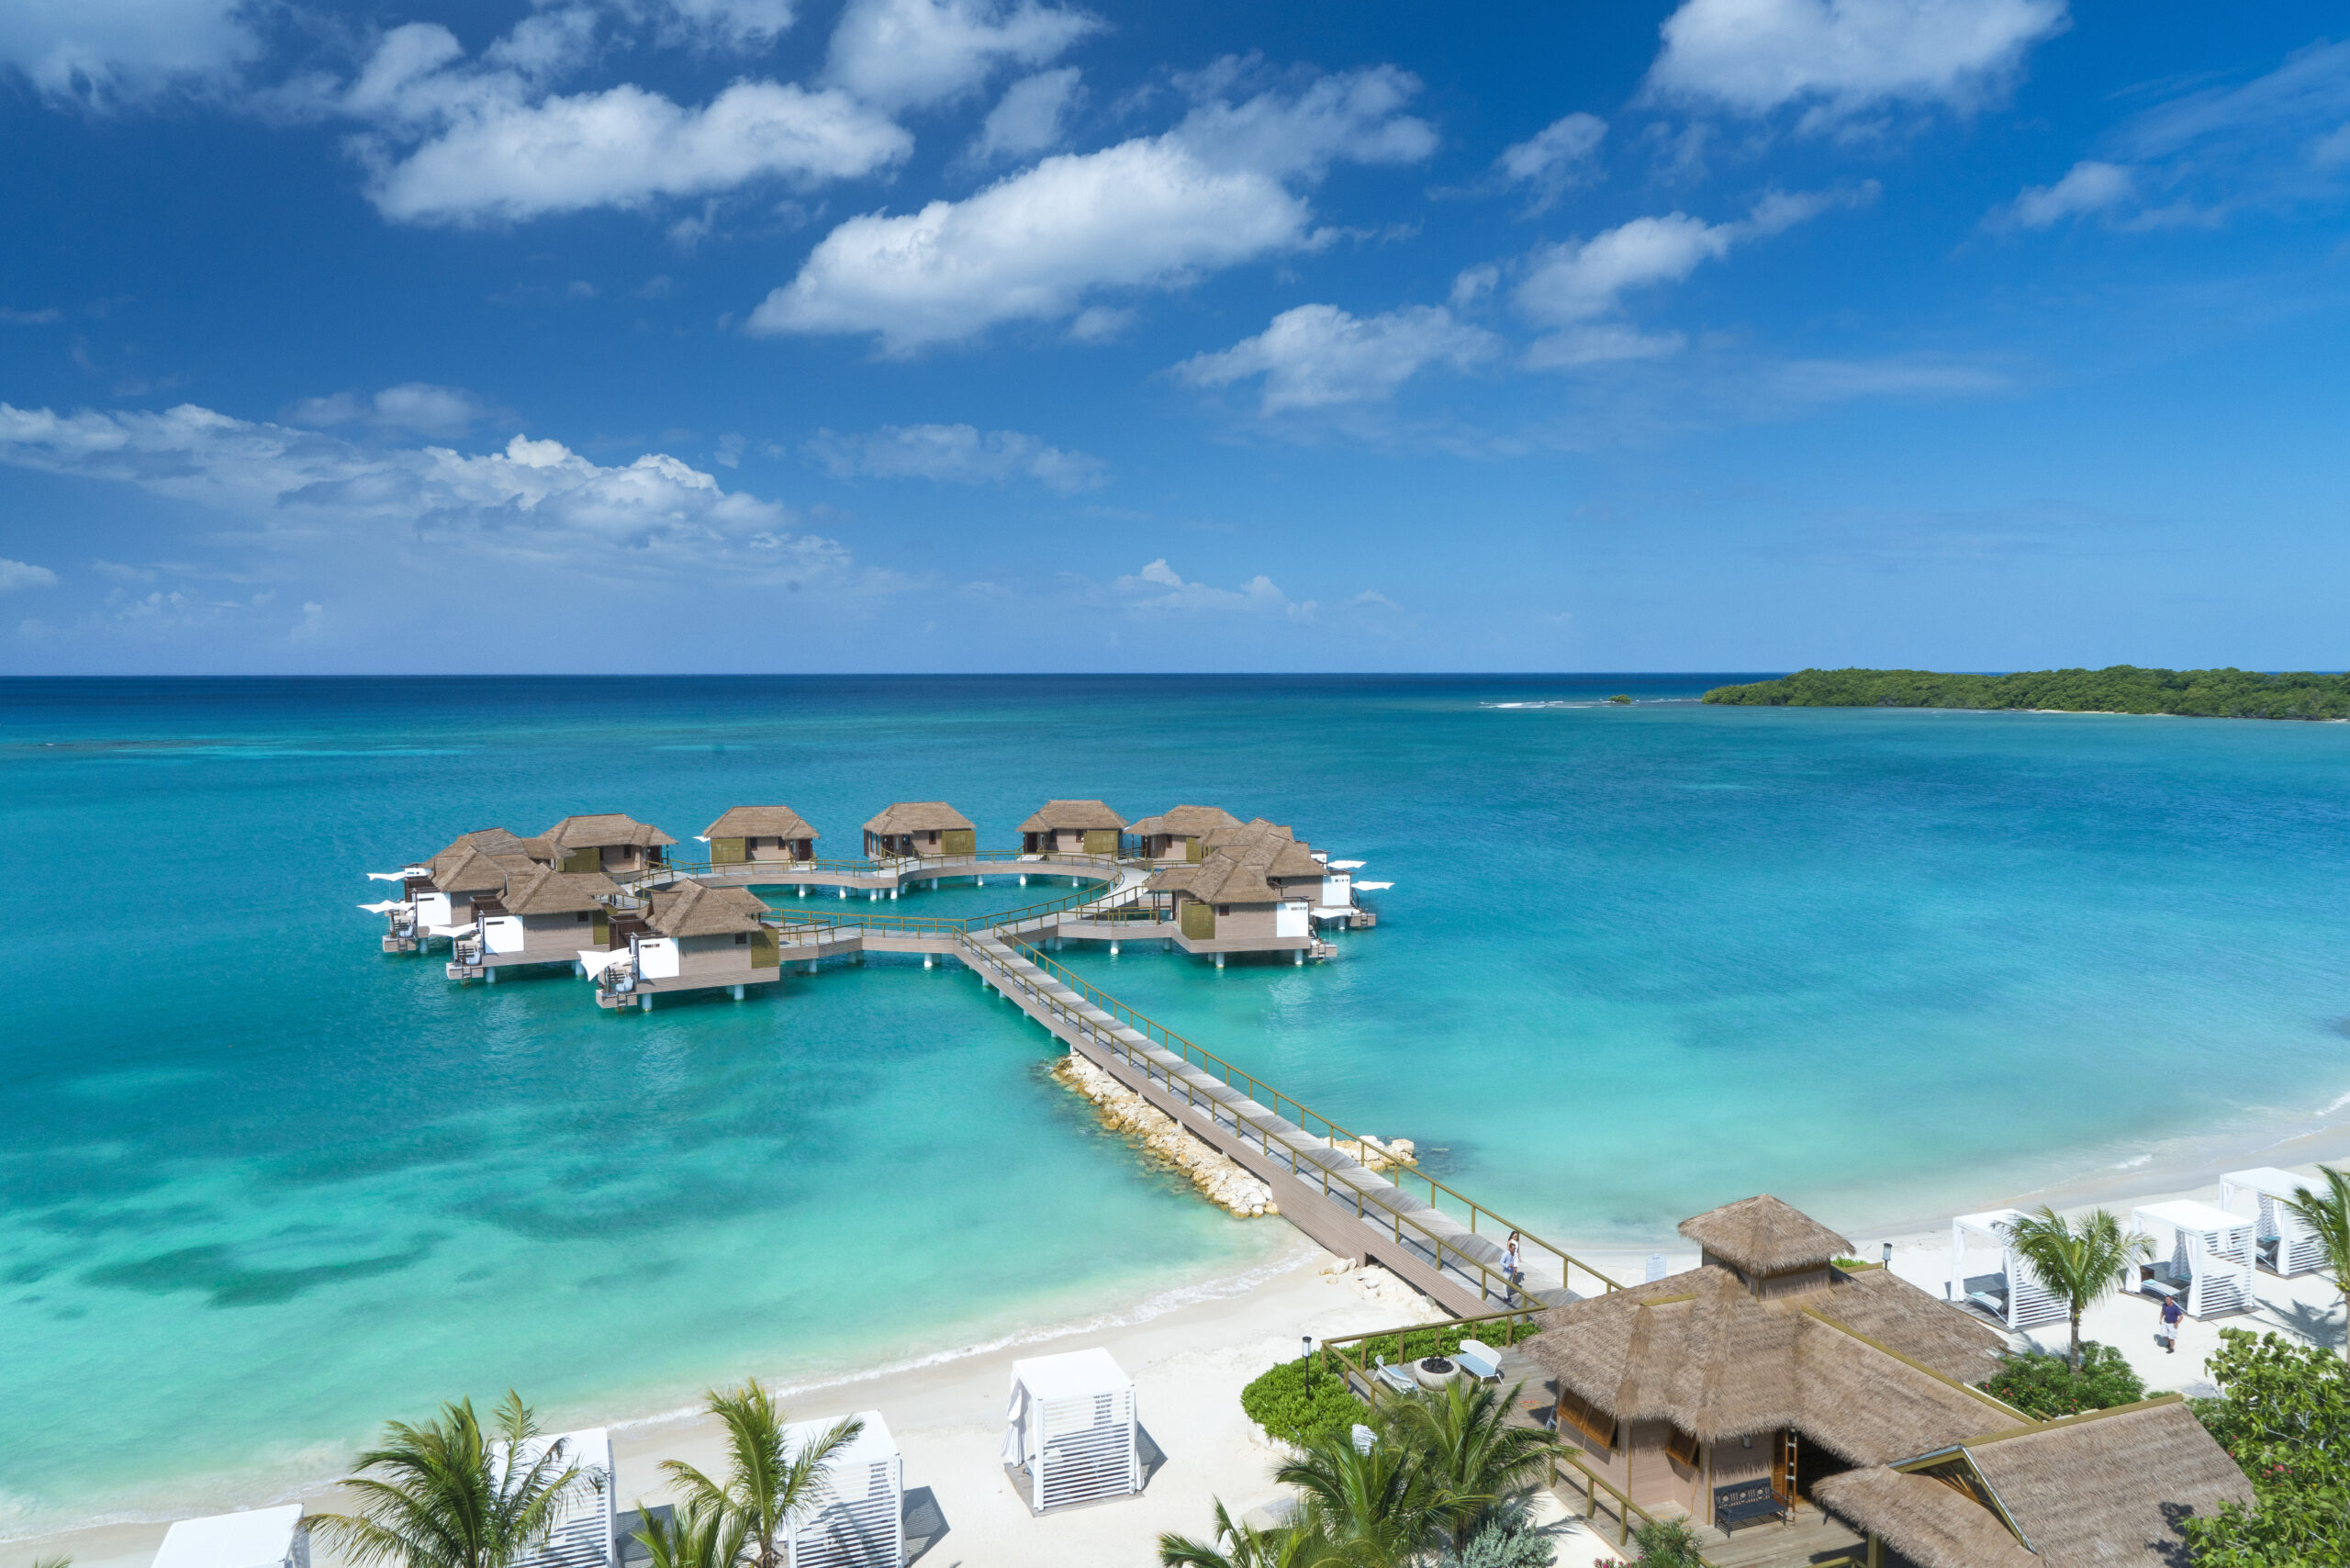 Une plage de sable blanc, des cocotiers, la mer des Caraïbes et le ciel bleu, un ponton qui mène aux villas sur pilotis de Sandals Resorts